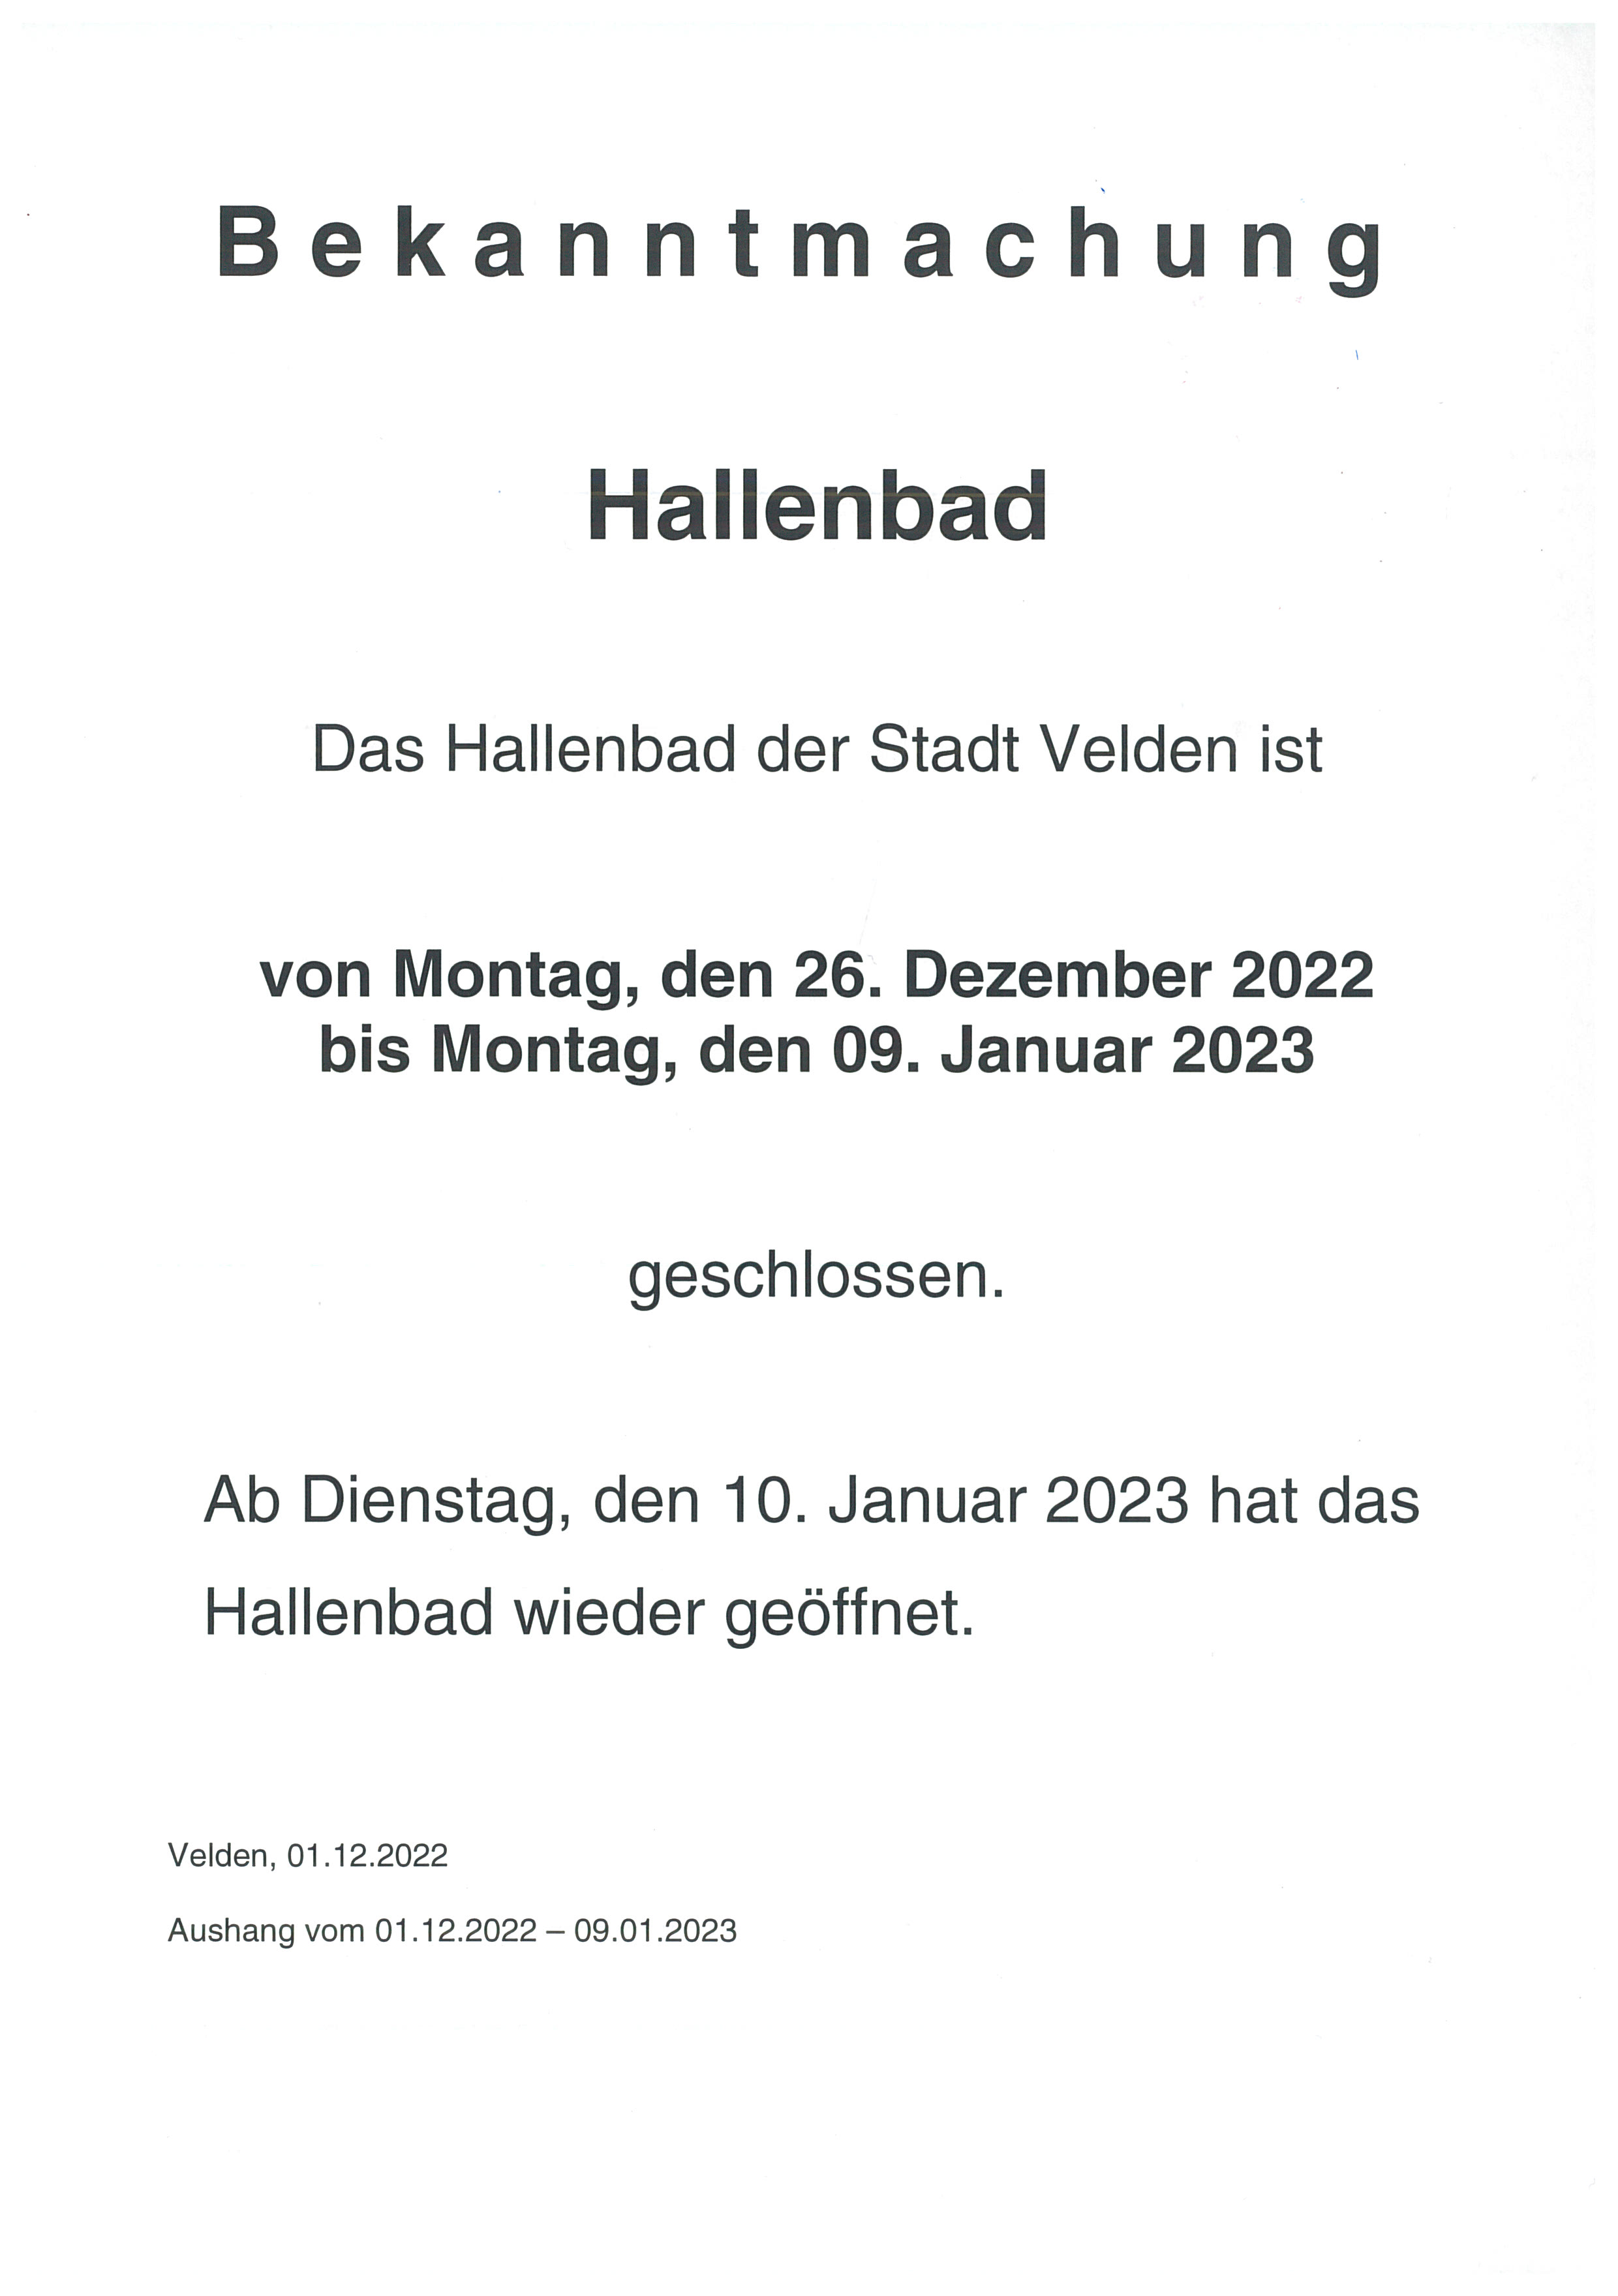 Hallenbad geschlossen Weihnachten 2022